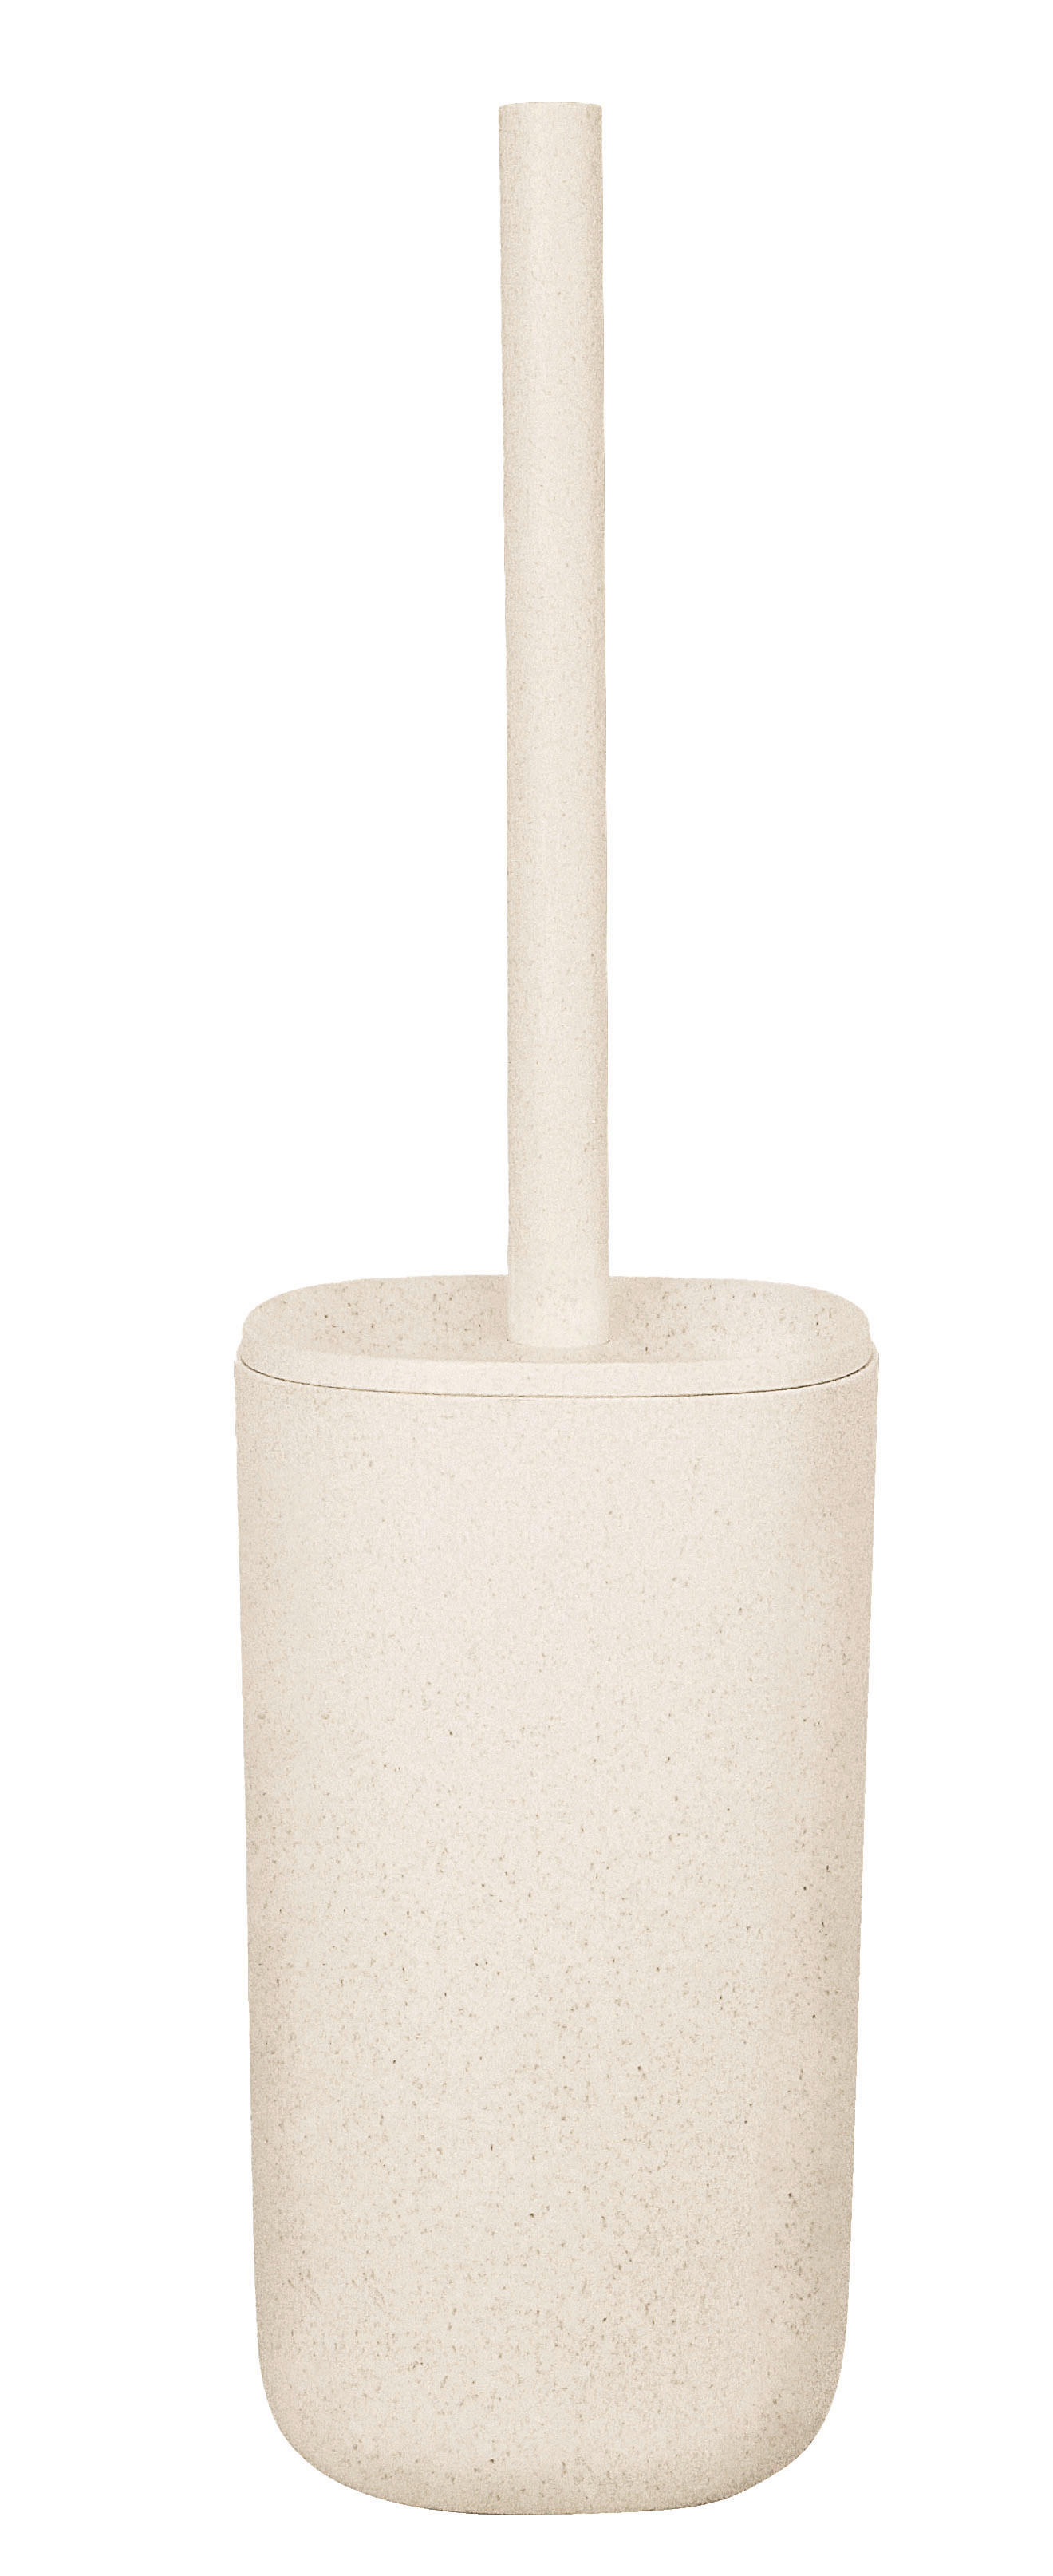 WC SADA - ŠTĚTKA A DRŽÁK - barvy hliníku/béžová, Basics, plast (10,6/39/10,6cm) - Kleine Wolke